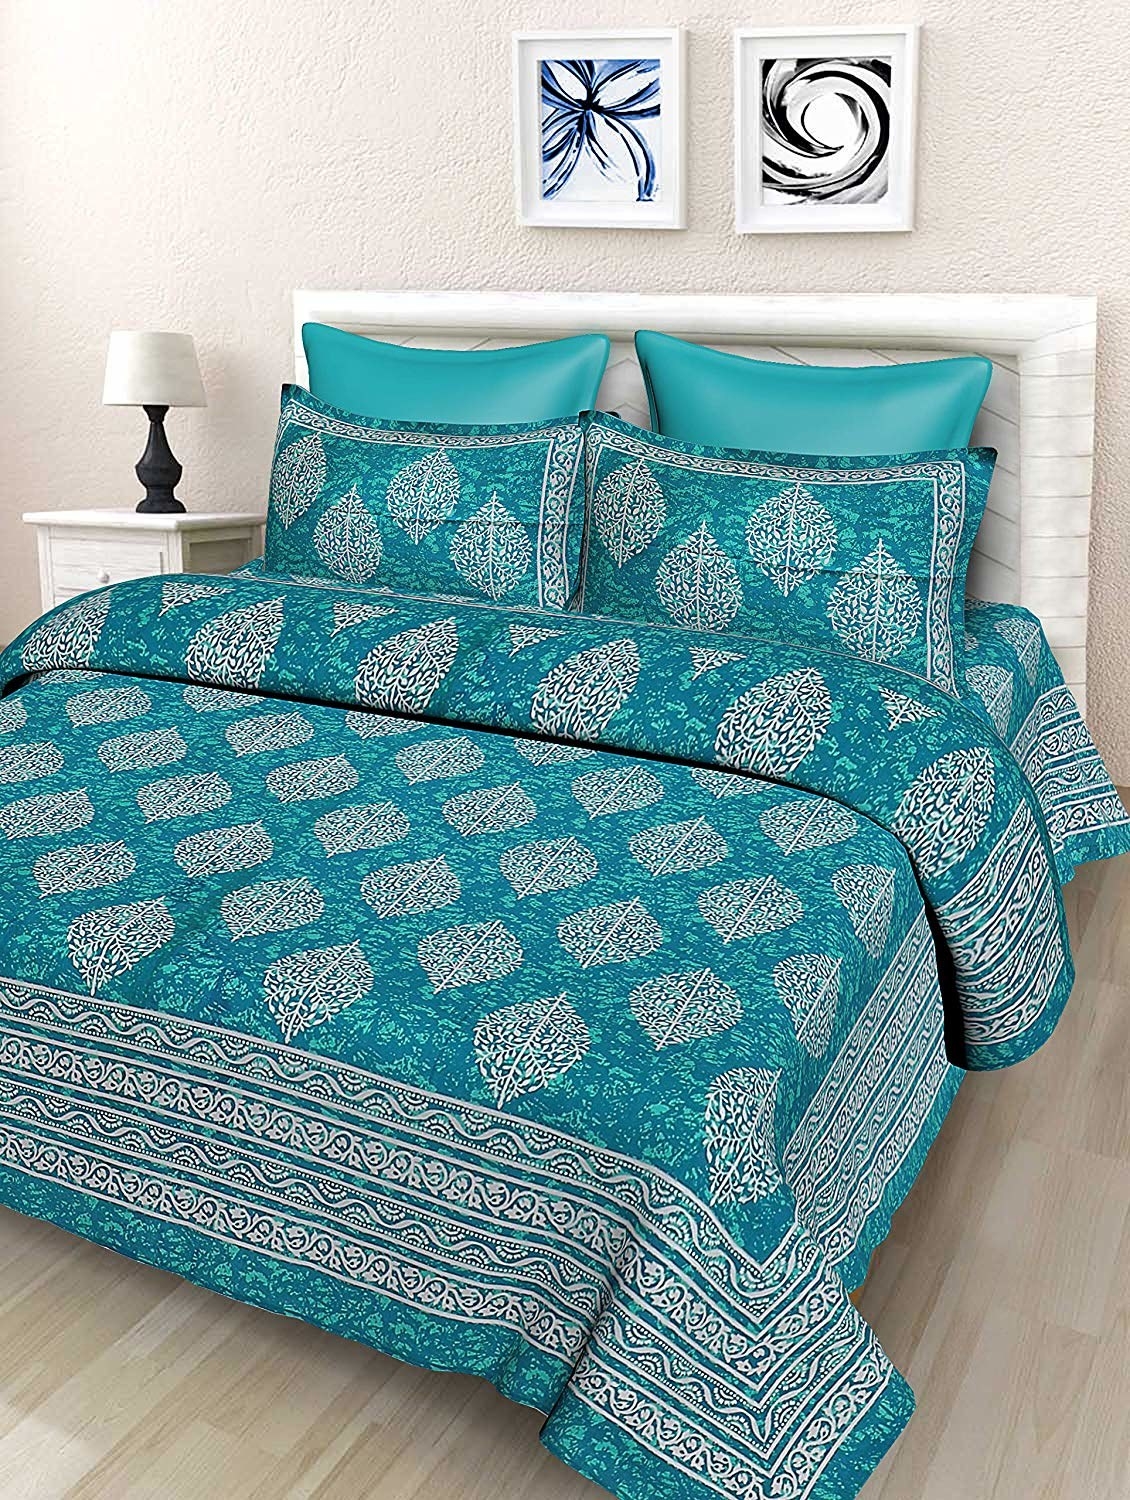 Blue bedsheet